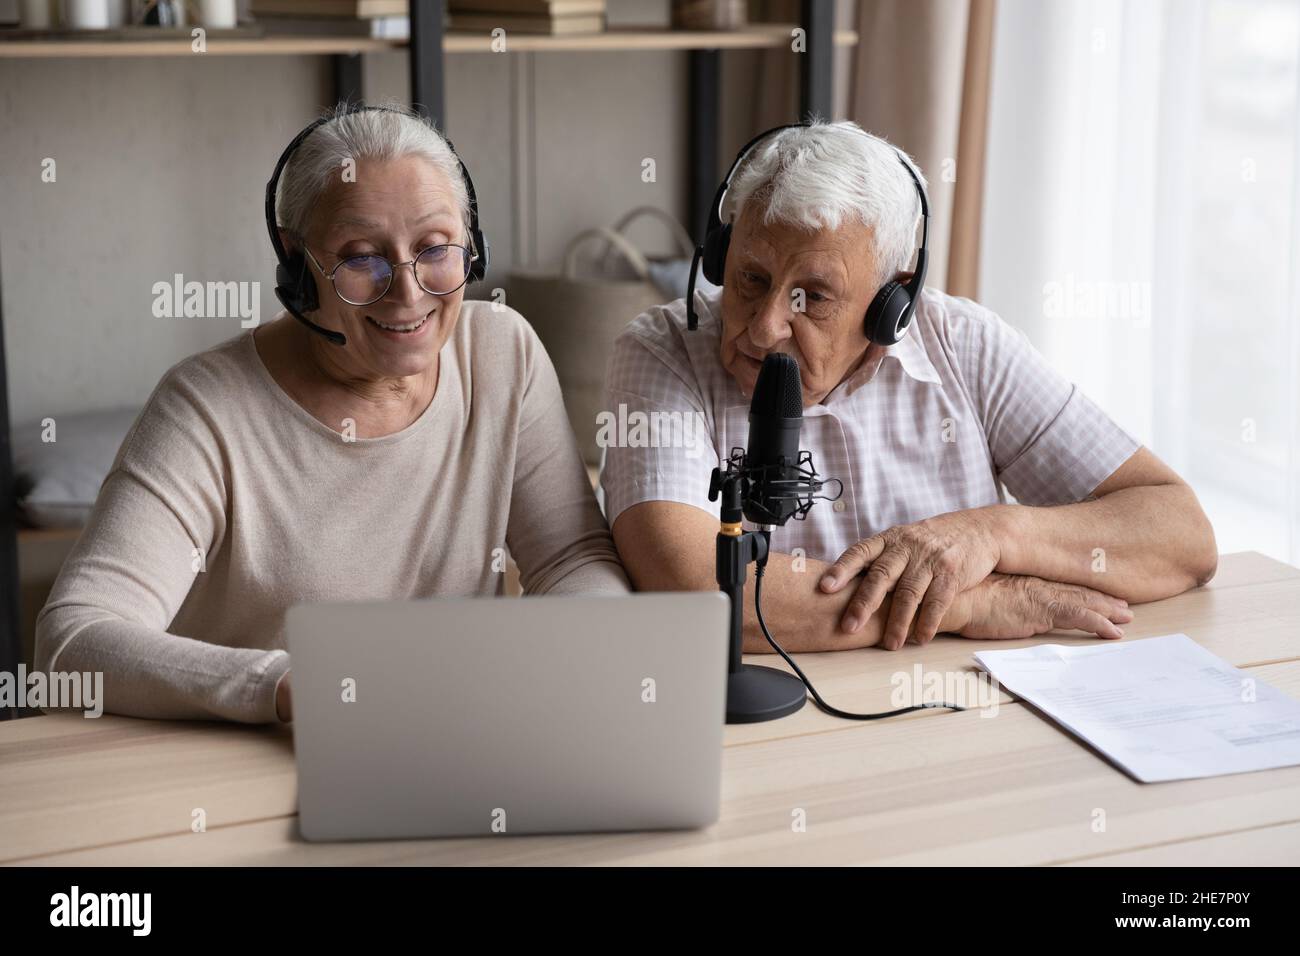 Freudig fokussiertes altes Paar, das zu Hause eine Stimme aufzeichnete. Stockfoto